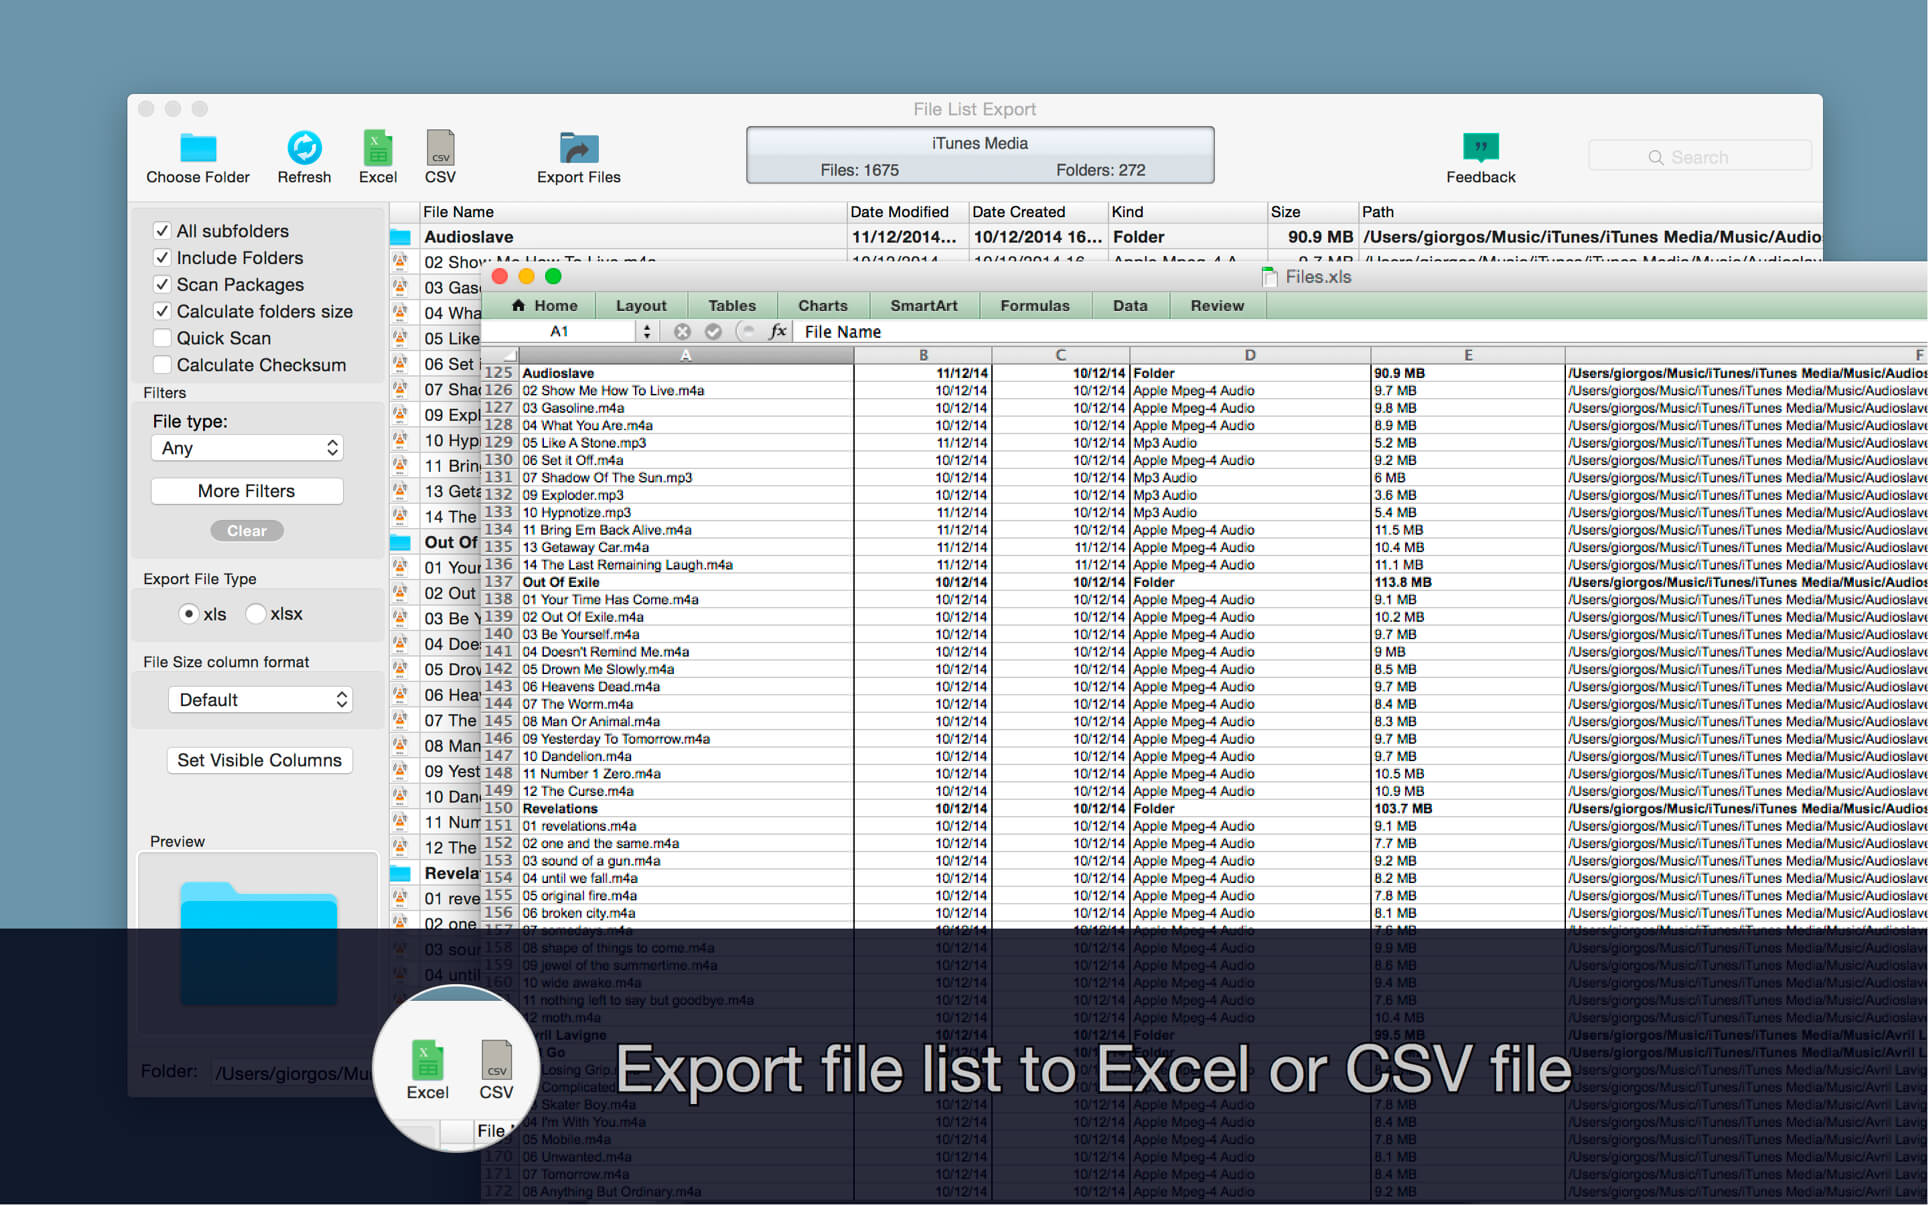 sonicfire pro 5 maximum export file size